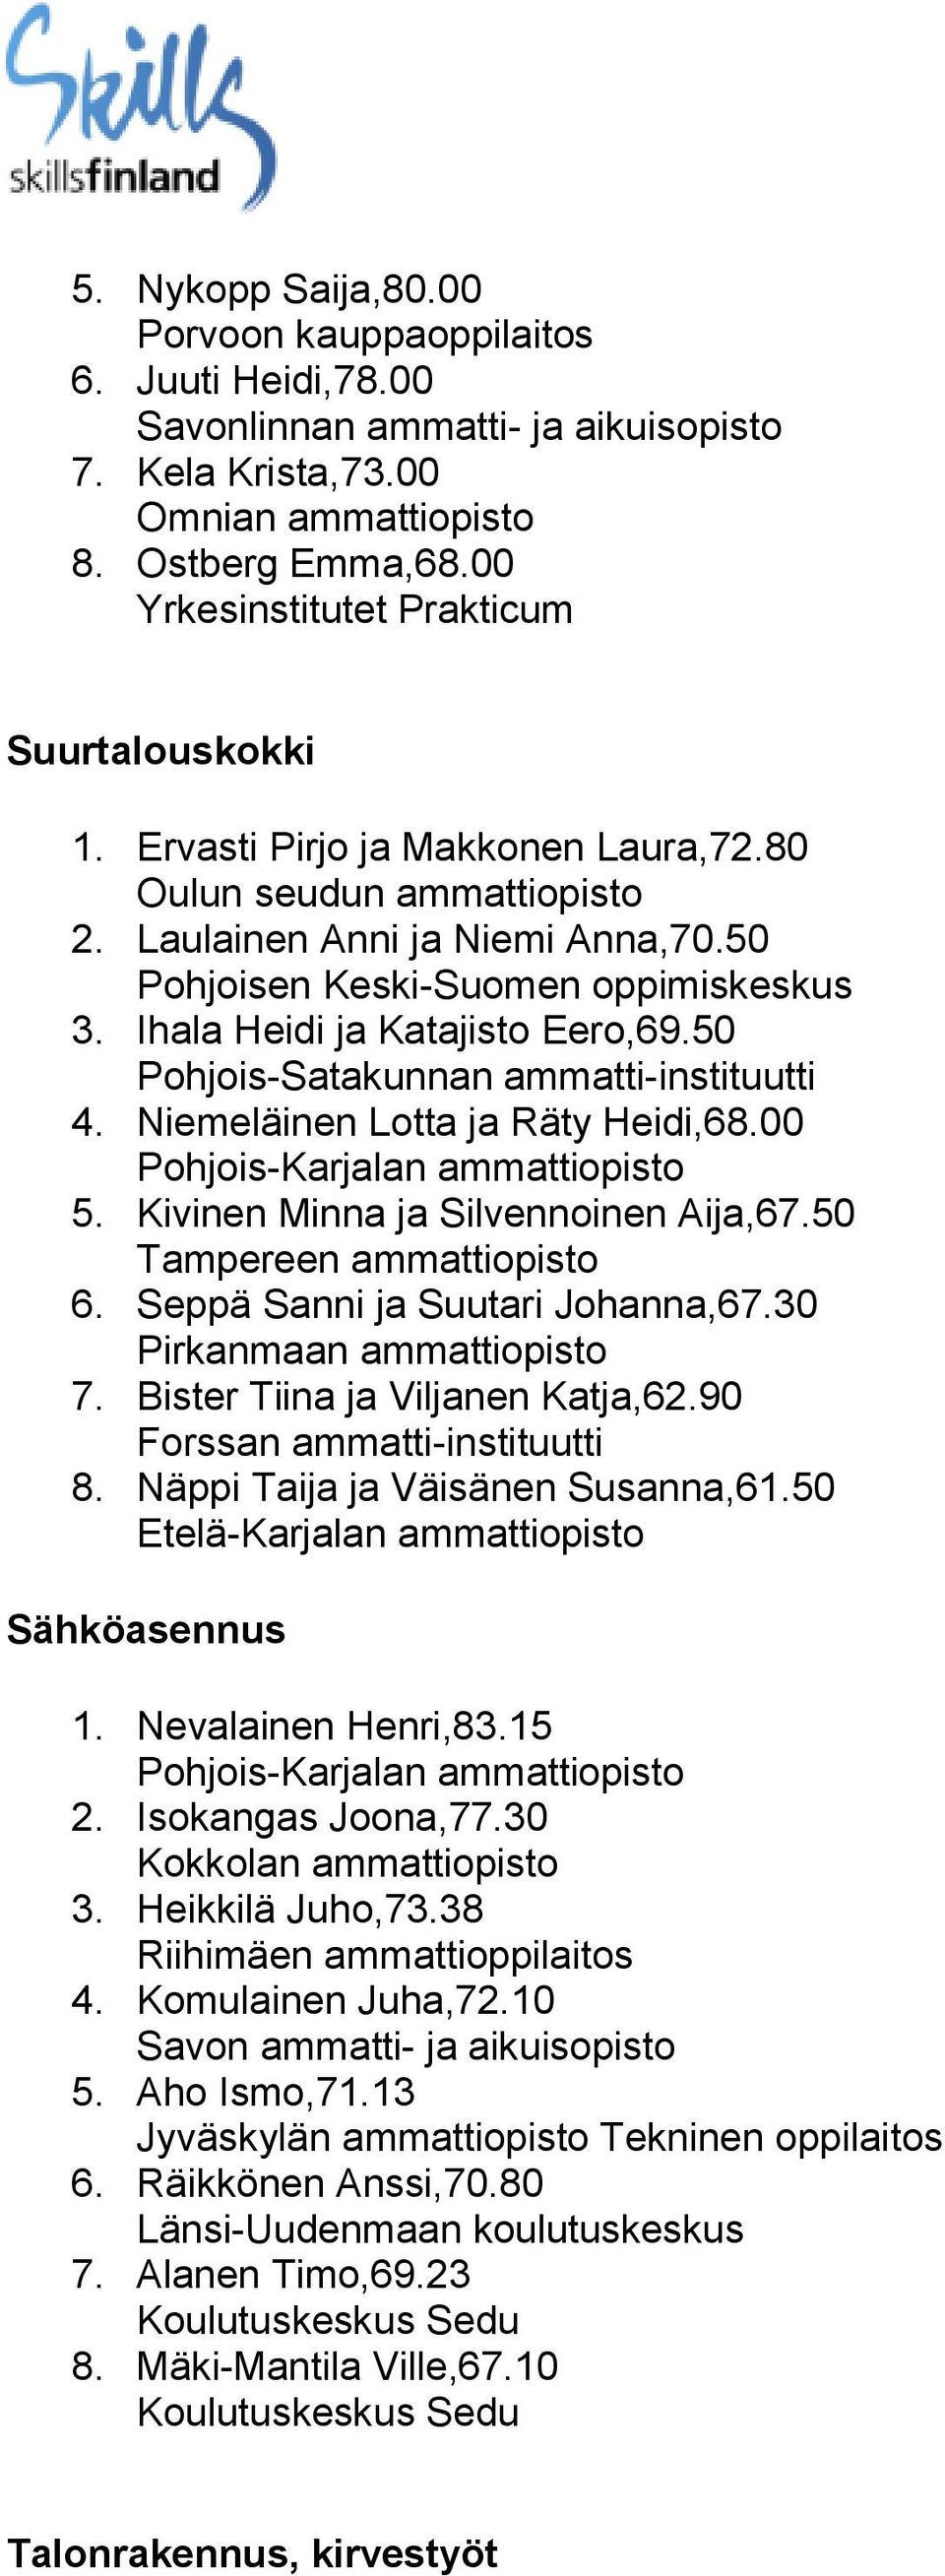 Niemeläinen Lotta ja Räty Heidi,68.00 5. Kivinen Minna ja Silvennoinen Aija,67.50 6. Seppä Sanni ja Suutari Johanna,67.30 Pirkanmaan ammattiopisto 7. Bister Tiina ja Viljanen Katja,62.